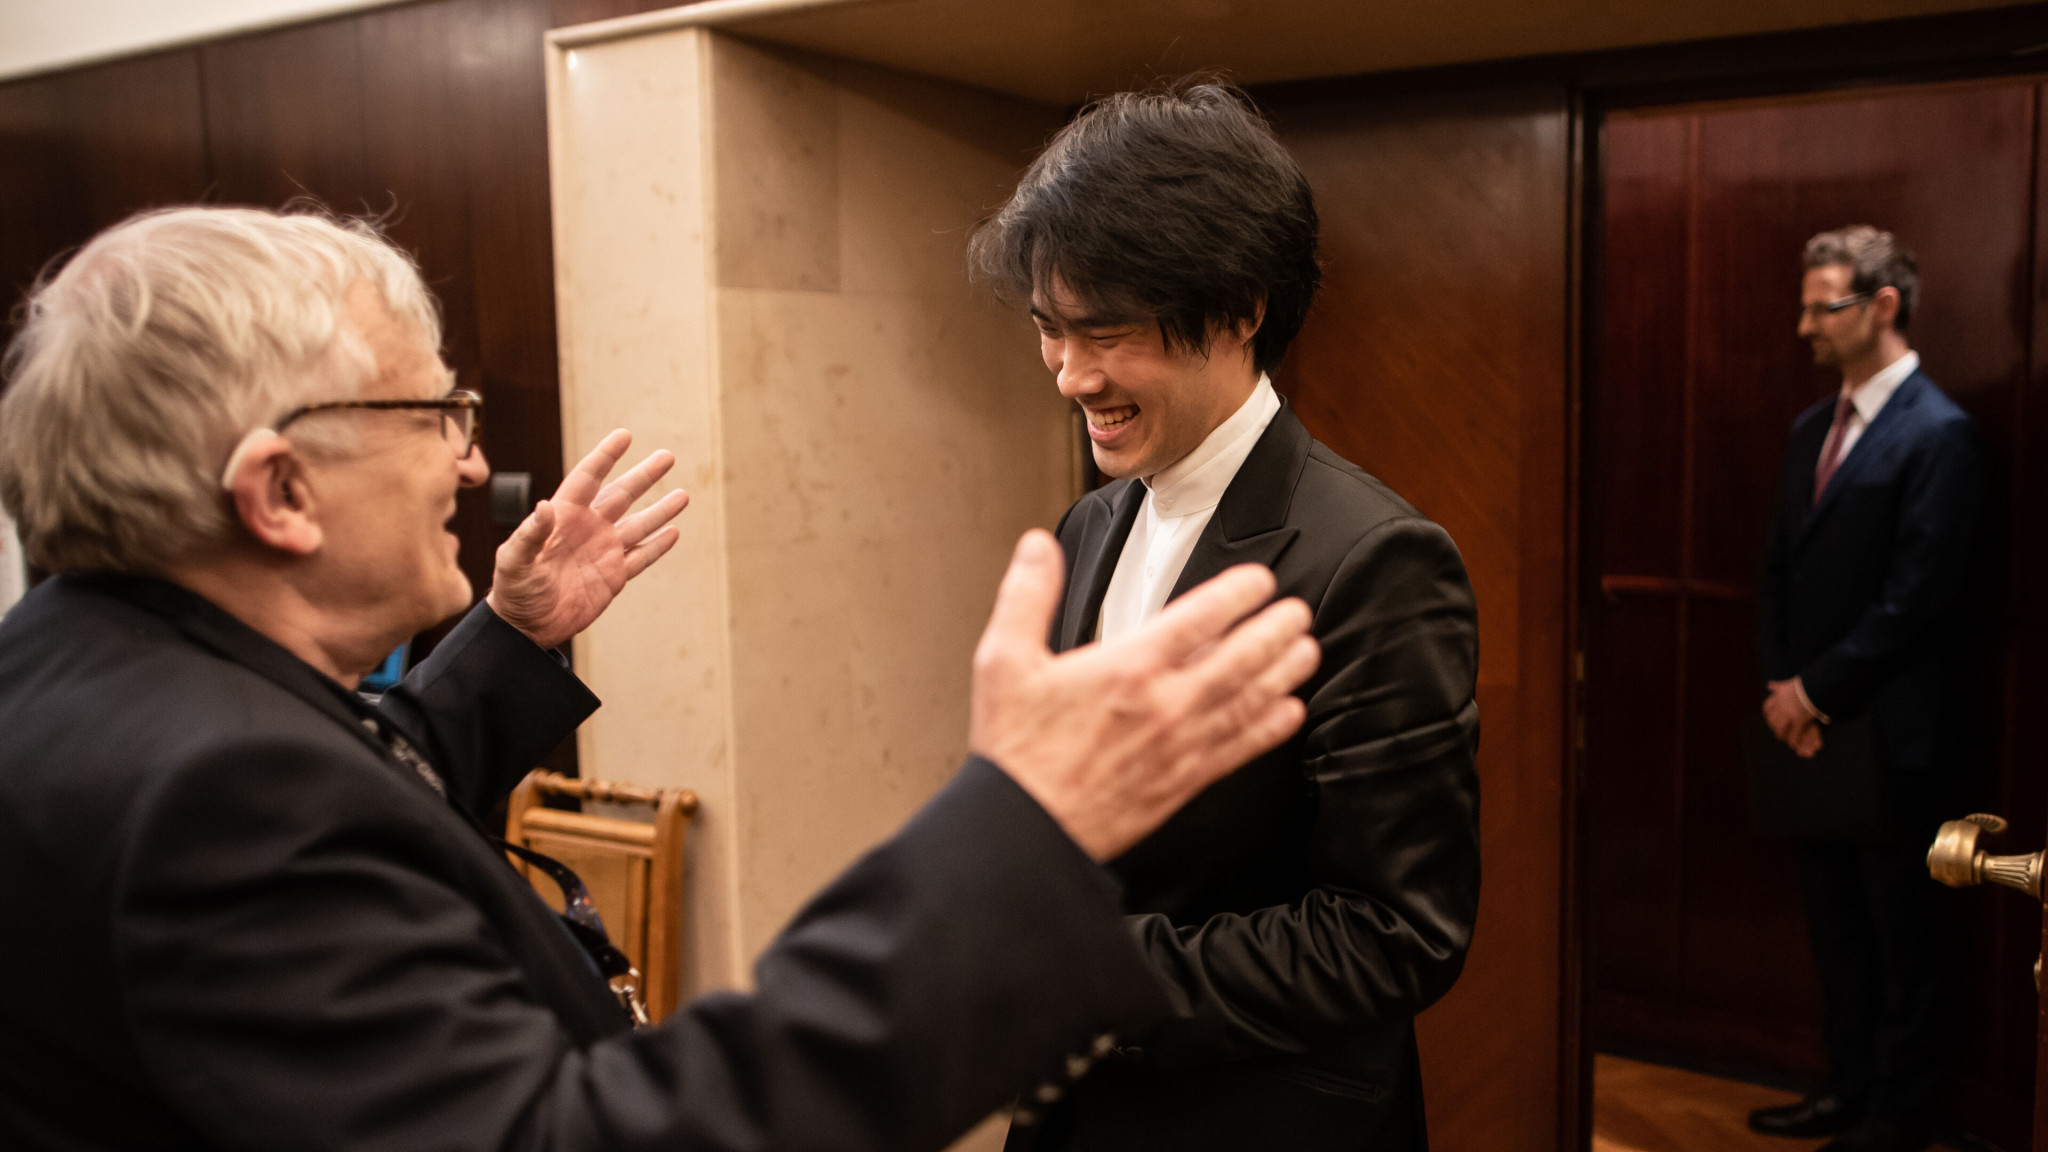 Bruce Liu gewinnt 18. Internationalen Chopin Wettbewerb – Deutsche Grammophon kündigt Veröffentlichung an